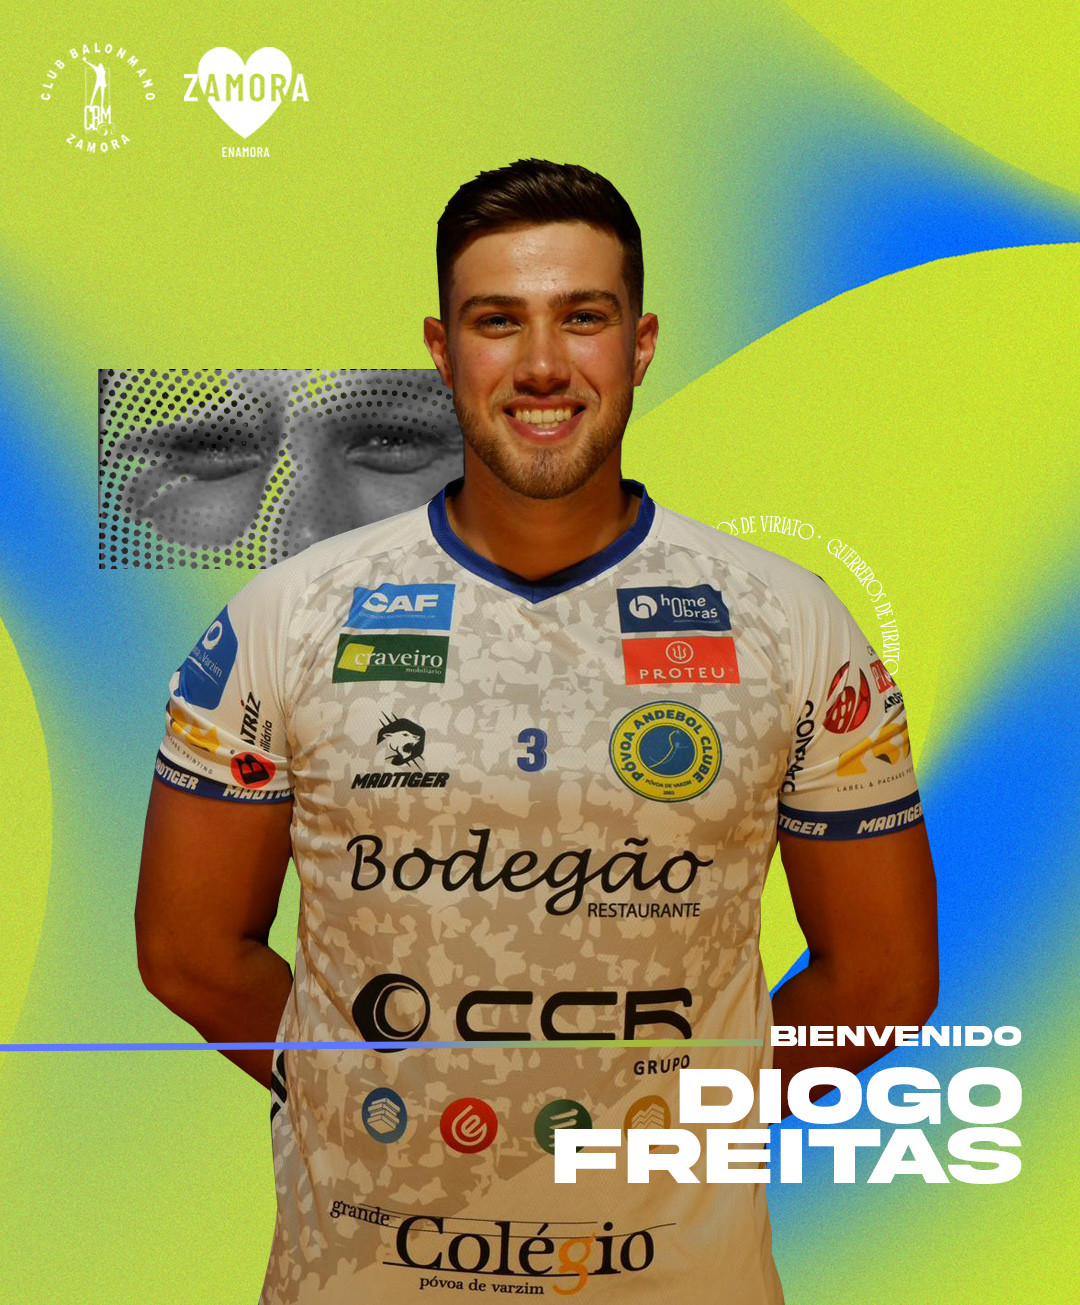 Diogo Freitas